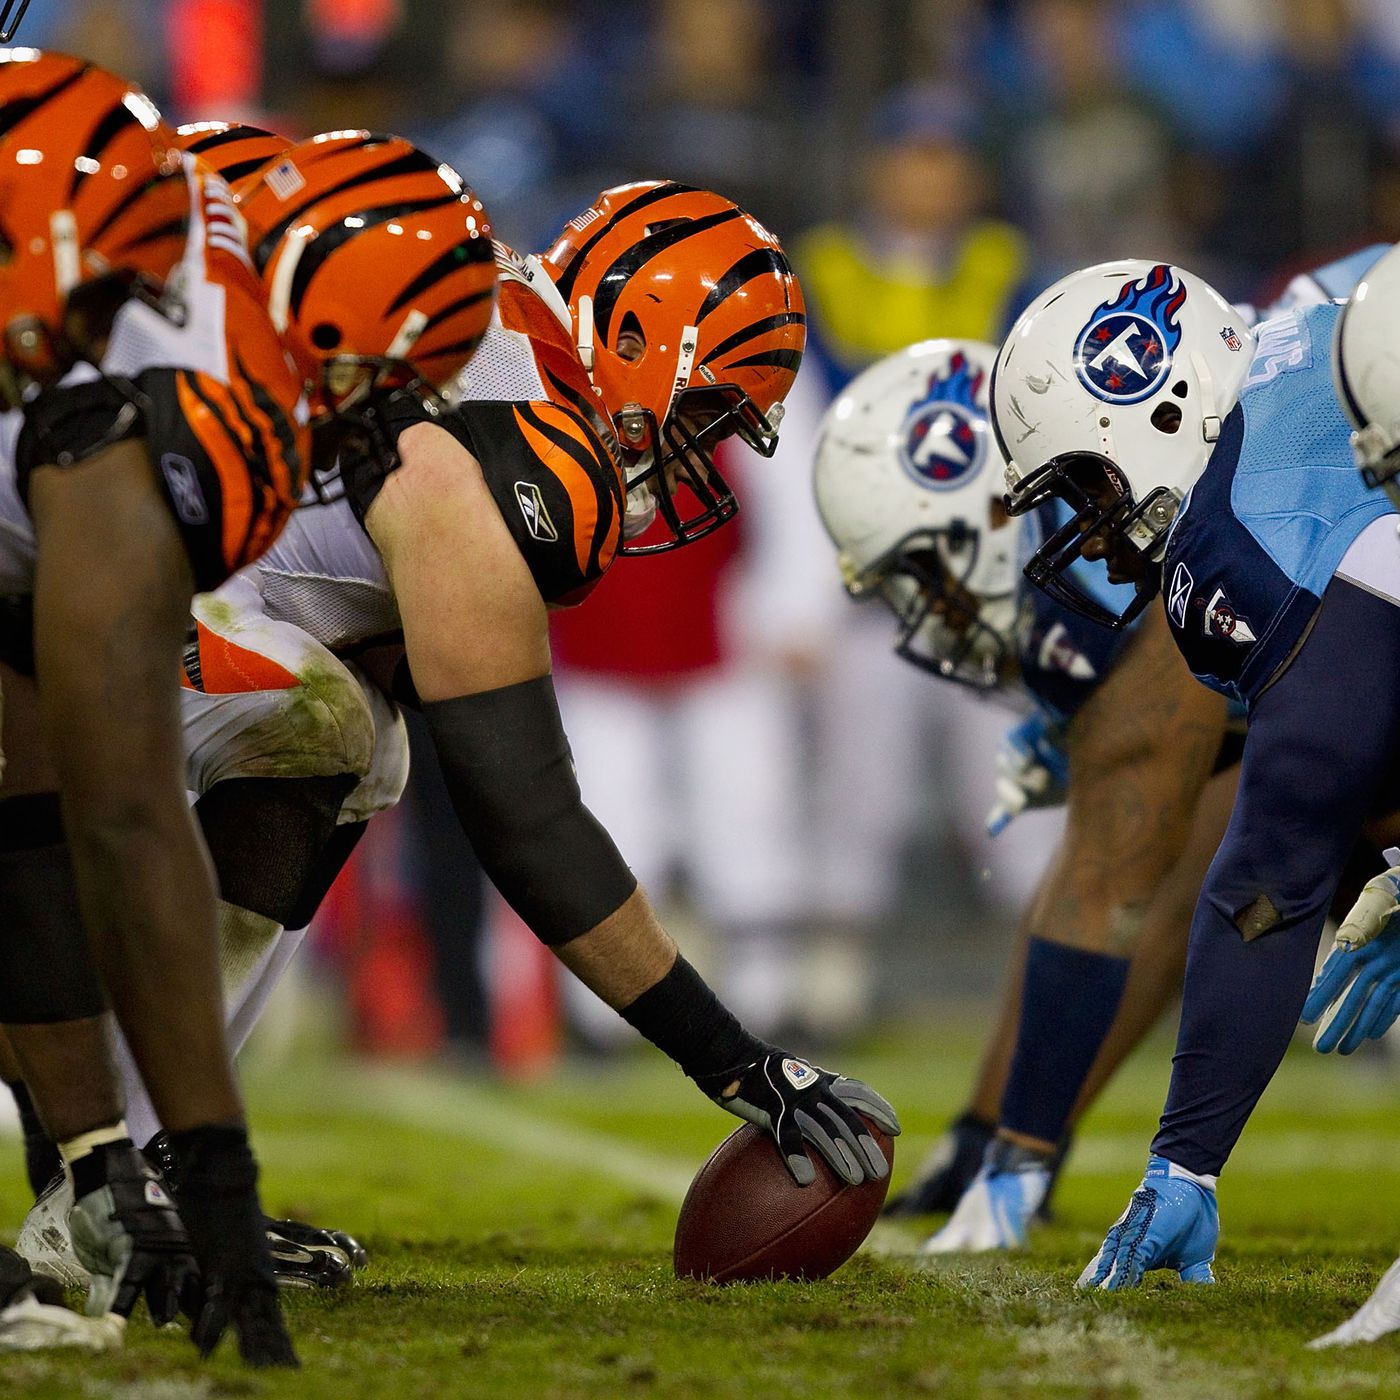 Cincinnati Bengals vs. Tennessee Titans: Prediction, NFL picks